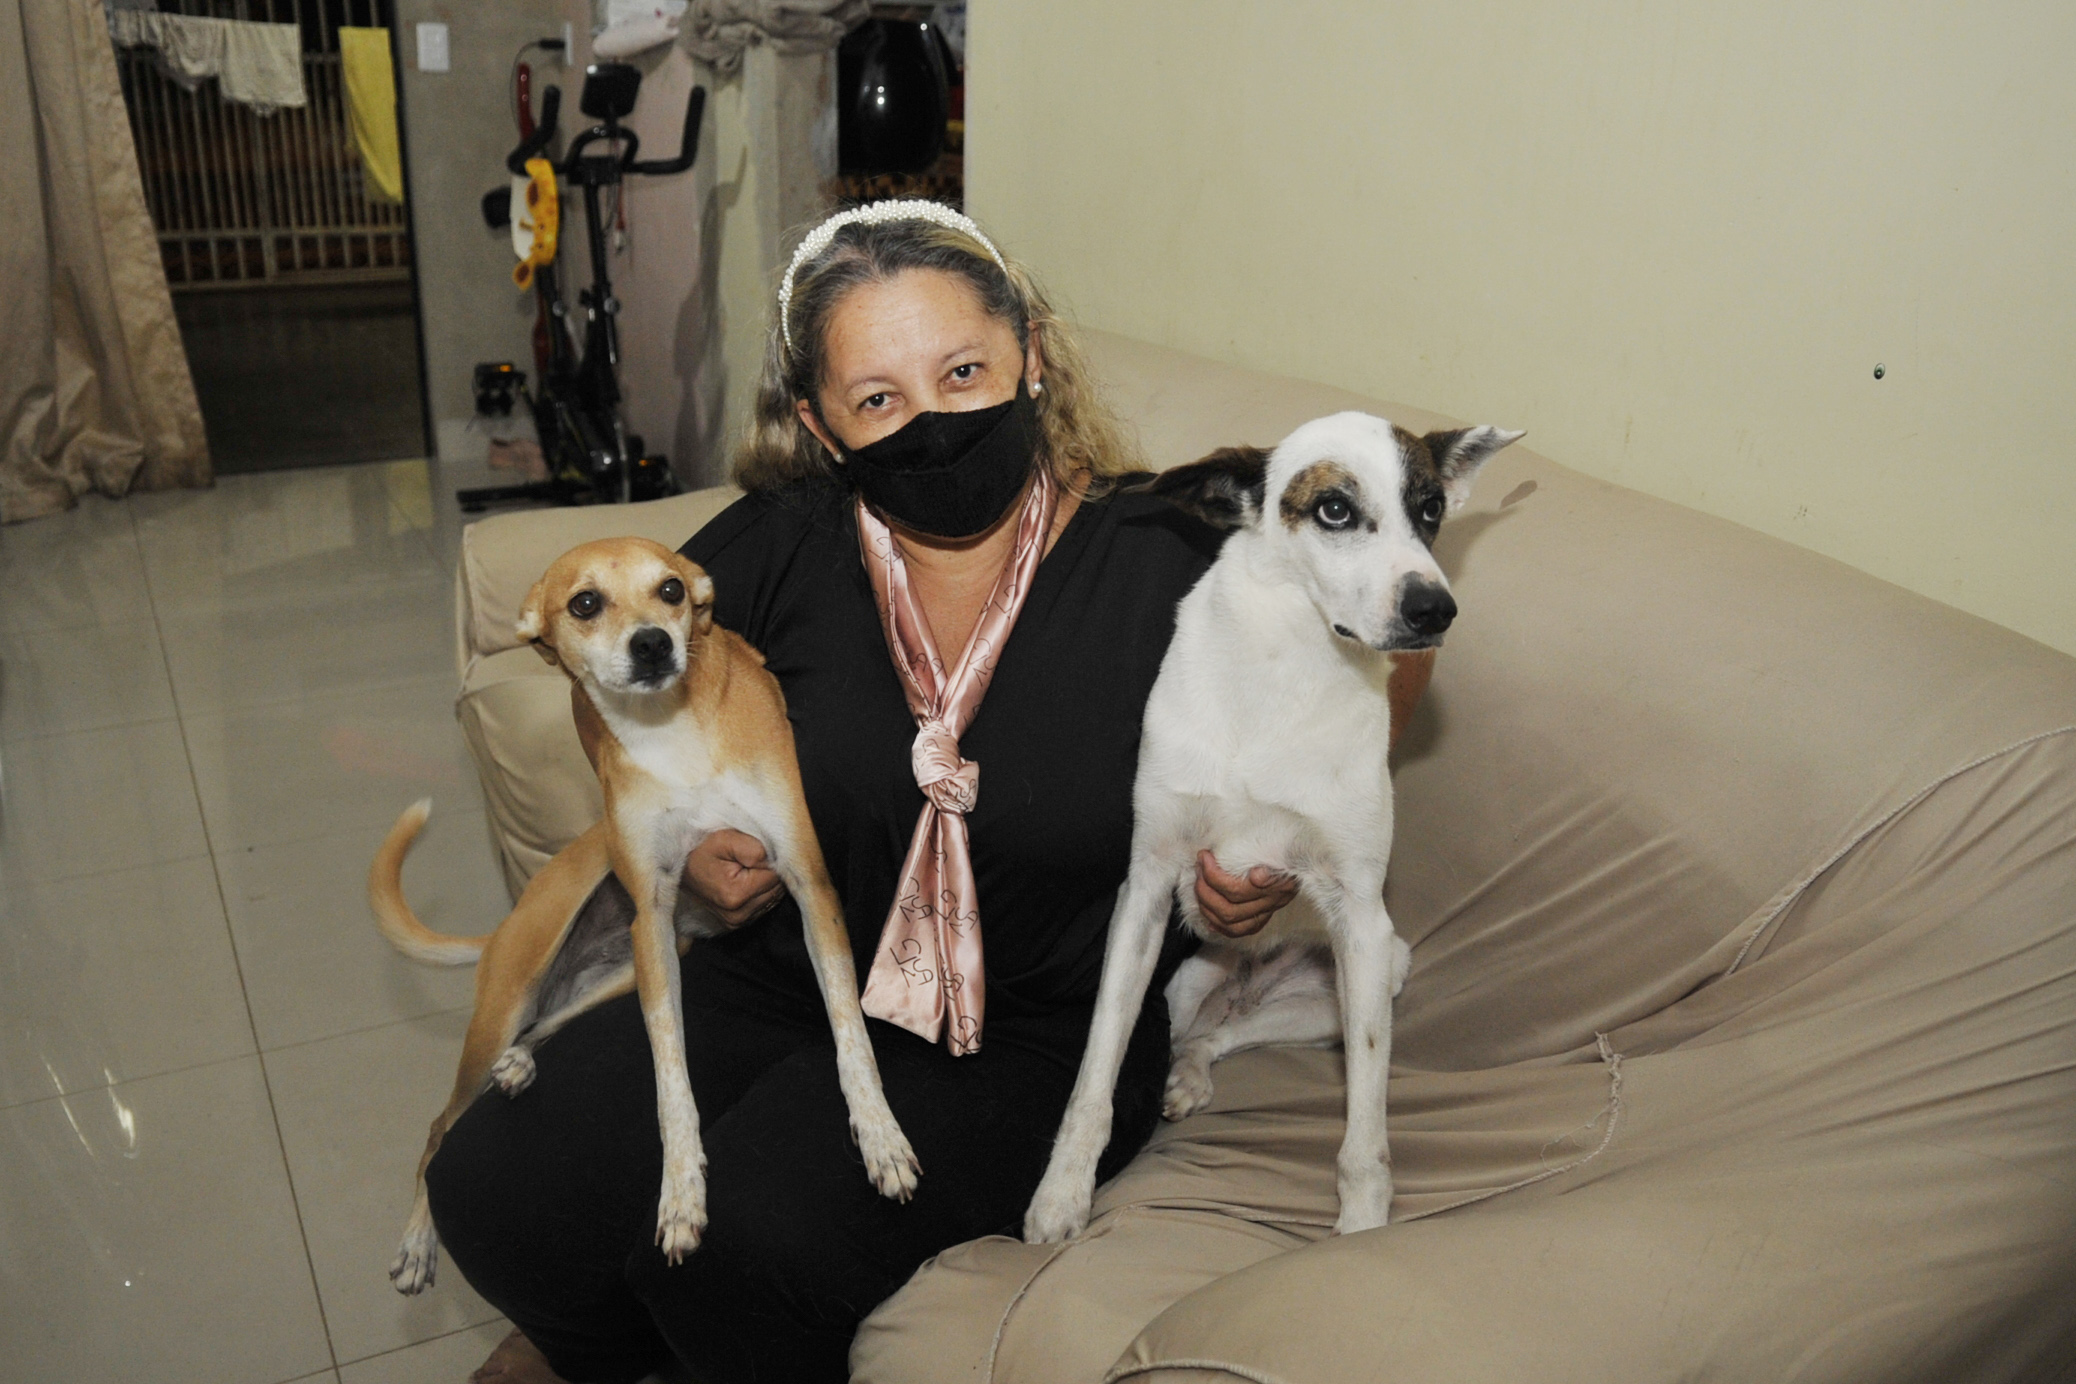 Benuélia é a segunda vítima de maus-tratos adotada por Gercina. A primeira foi Nina, uma cadela que a costureira flagrou apanhando de um homem com uma barra de ferro | Foto: Renato Araújo /Agência Brasília